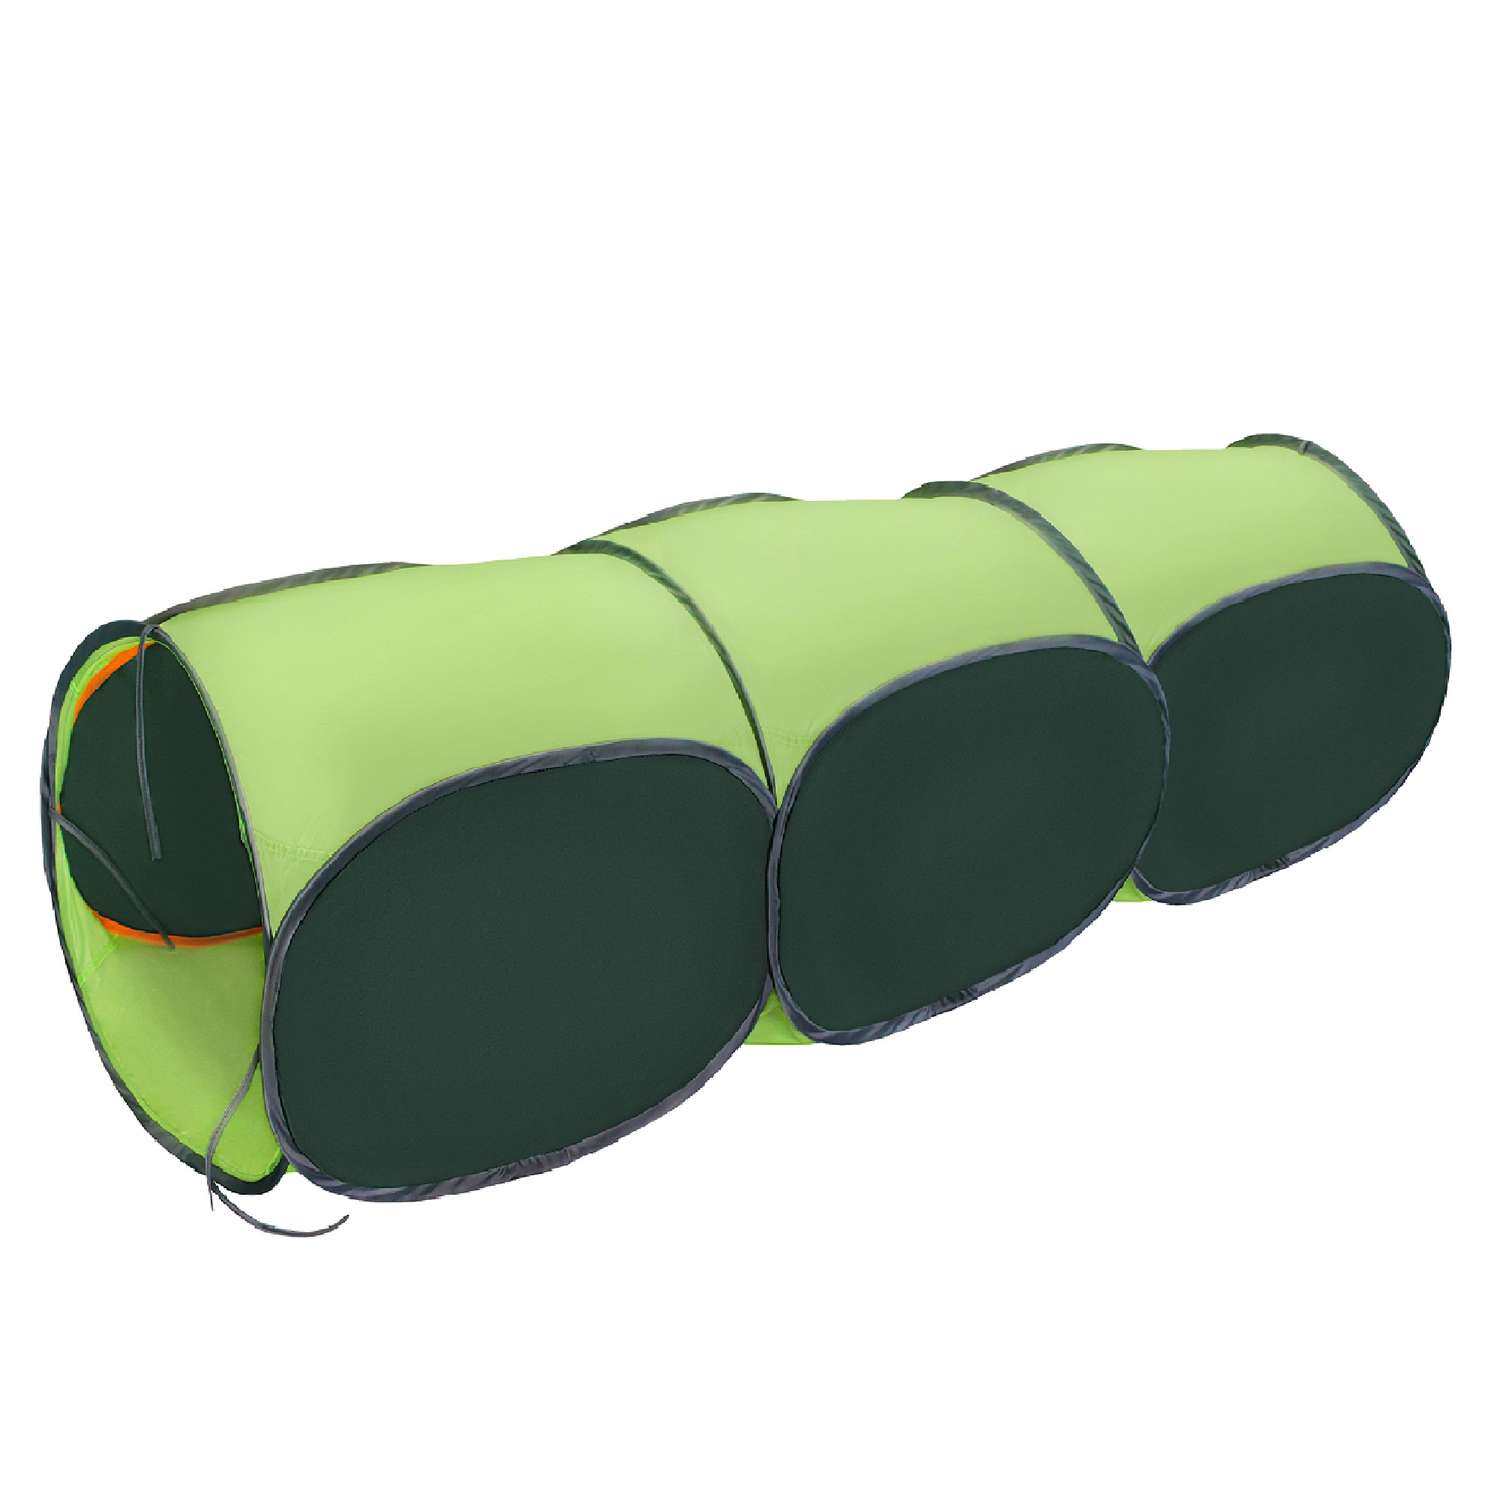 Тоннель для палатки Belon familia трёхсекционный цвет зелёный и салатовый - фото 1